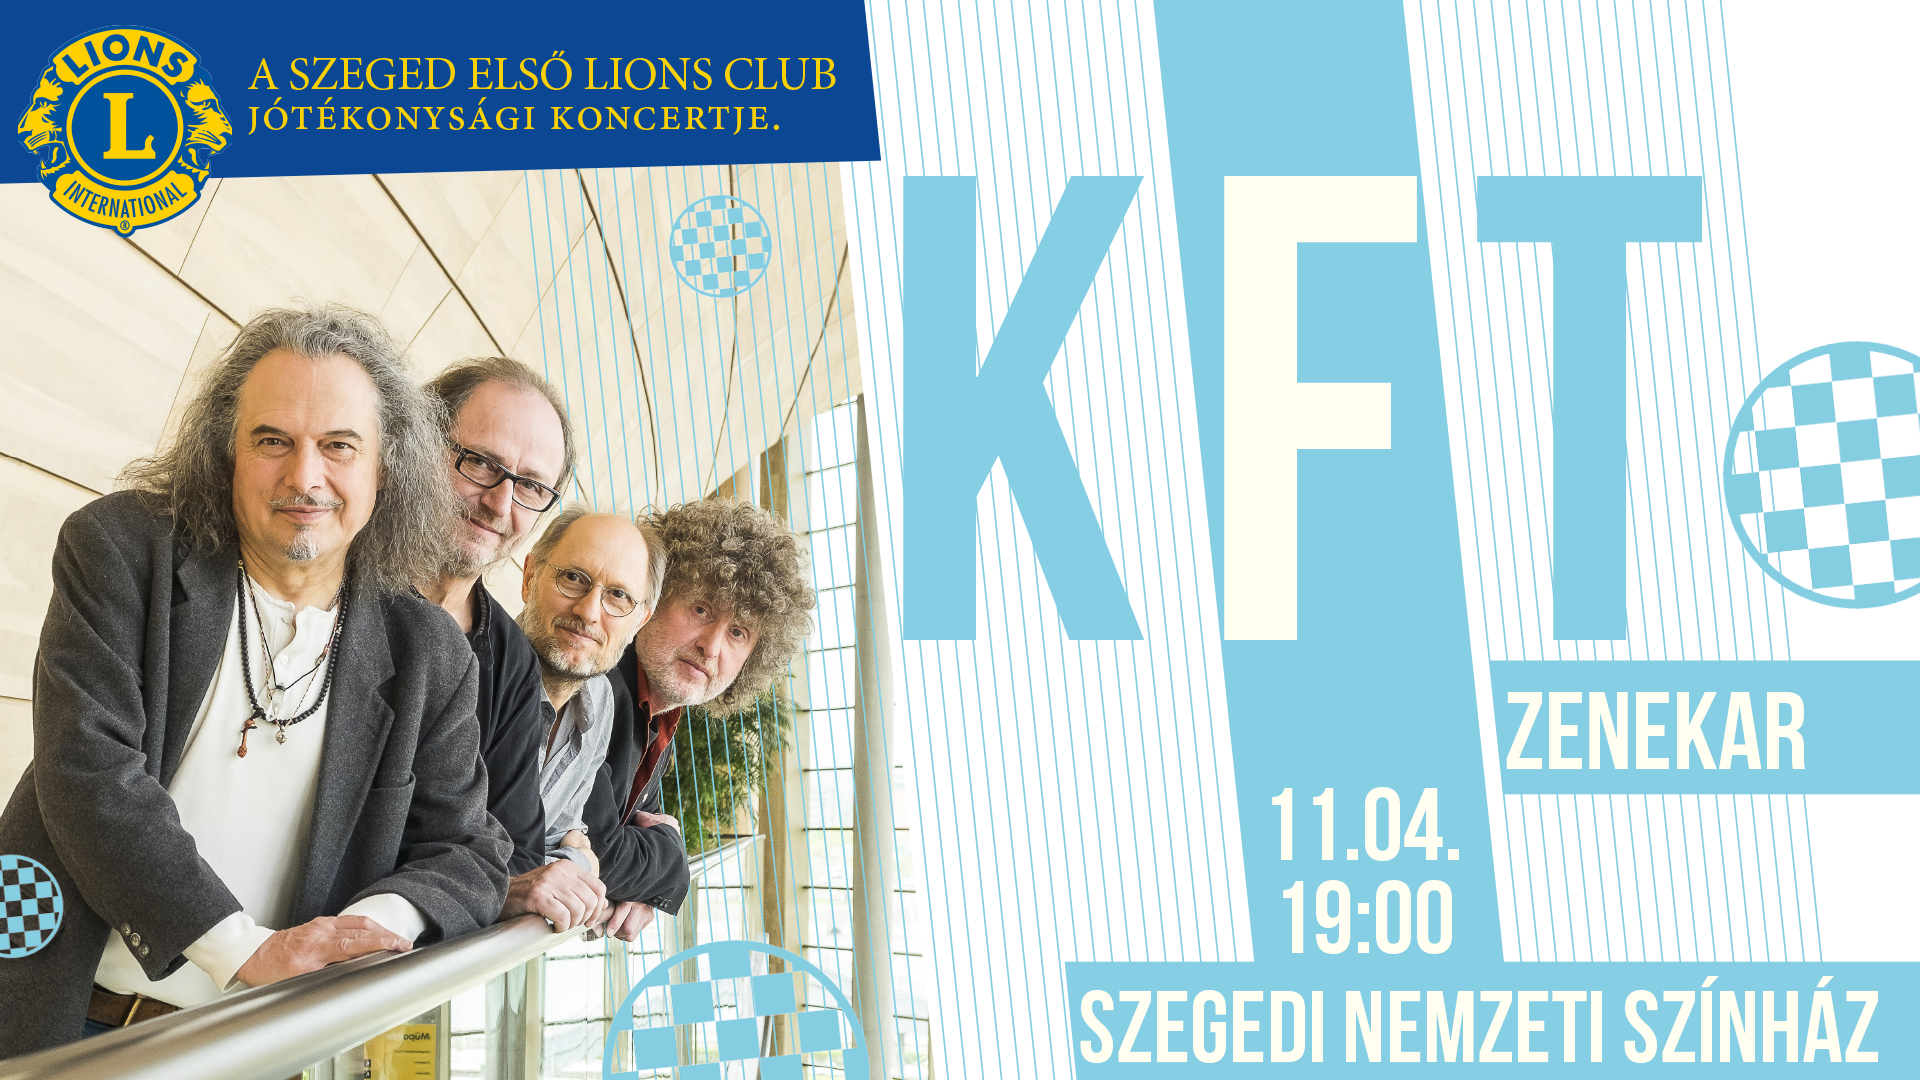 LIONS Jótékonysági Koncert a KFT Zenekar felépésével